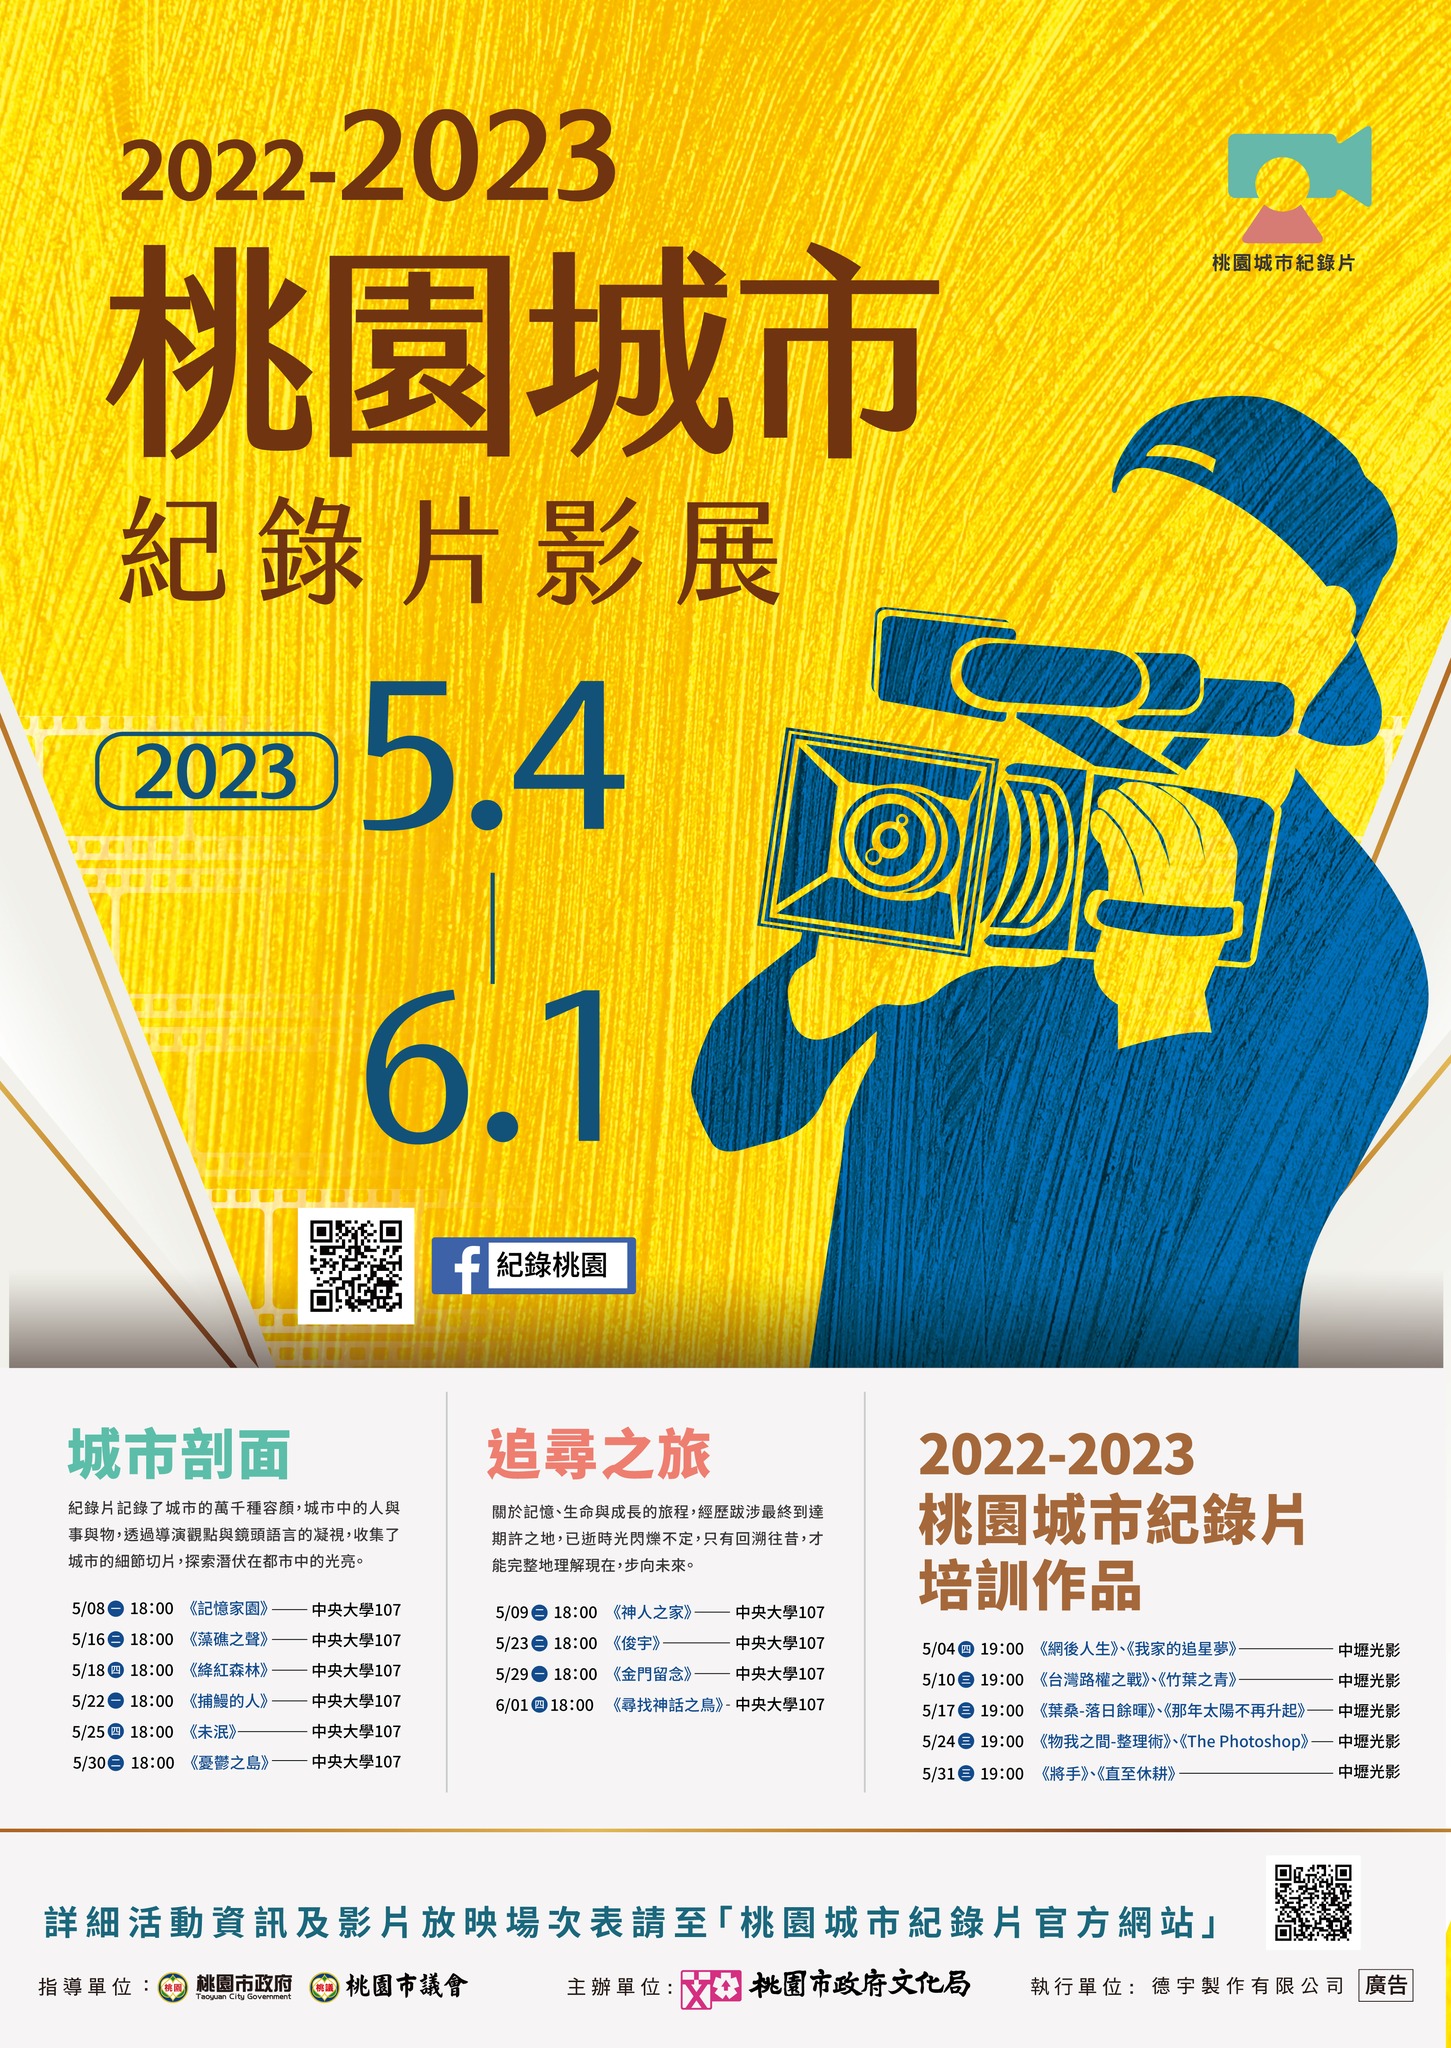 2022-2023 Taoyuan Documentary Festival